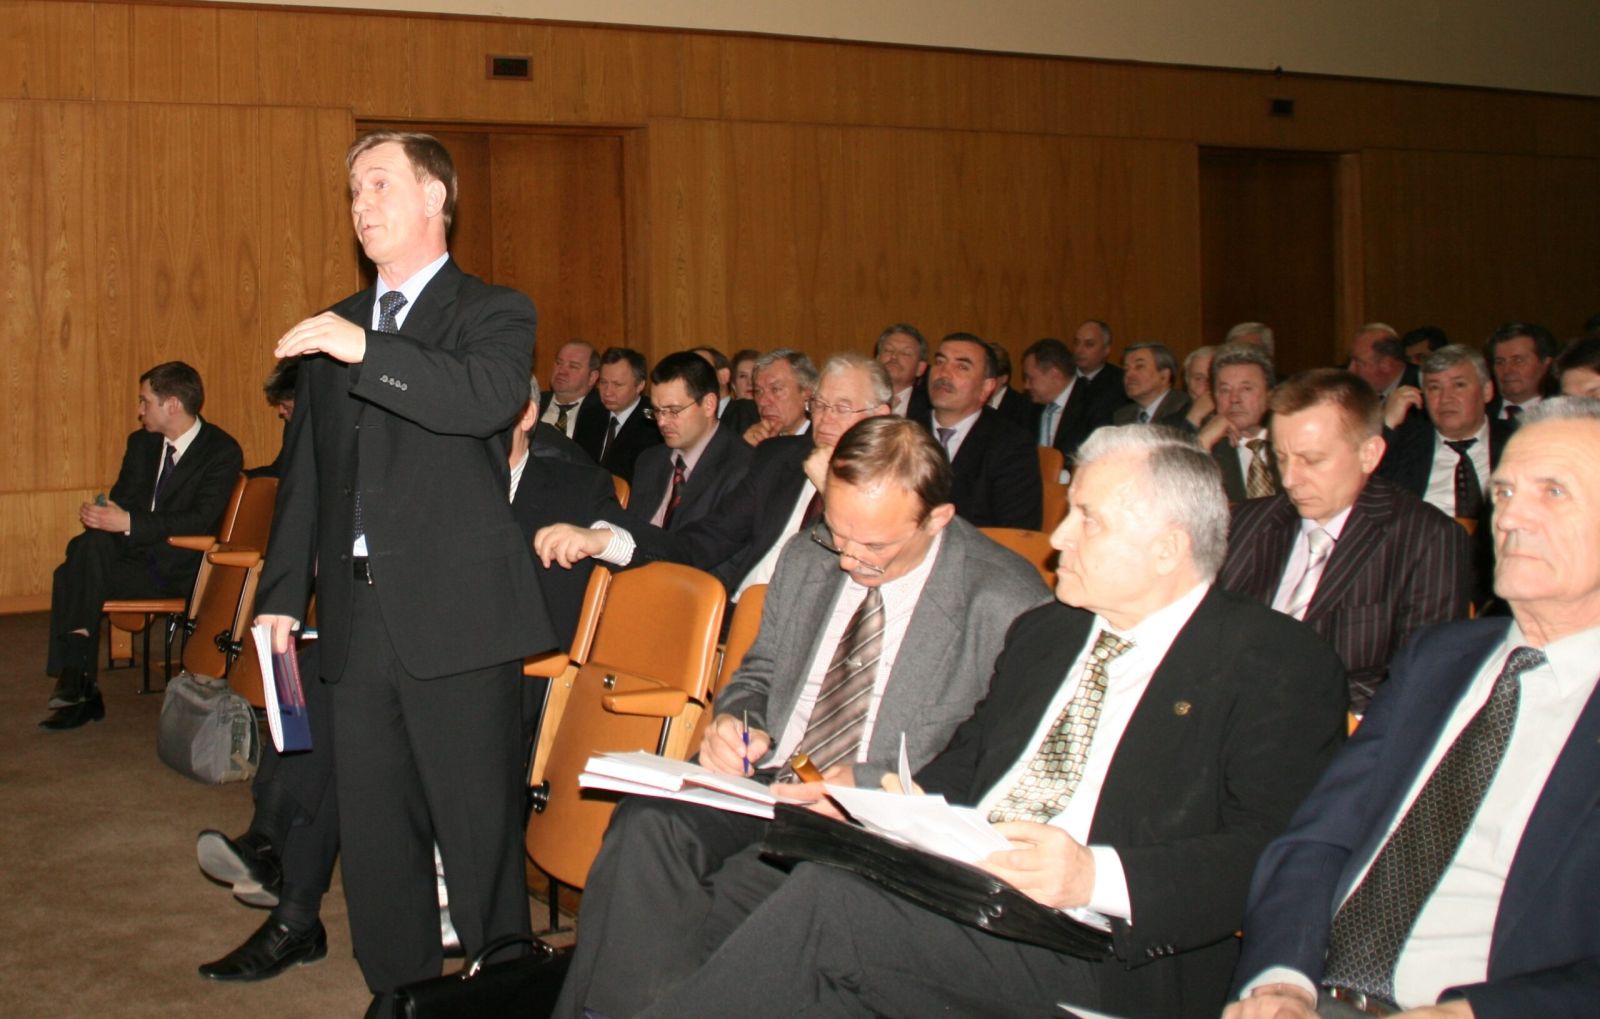 Расширенное заседание Коллегии Росавиации, 2008 г.